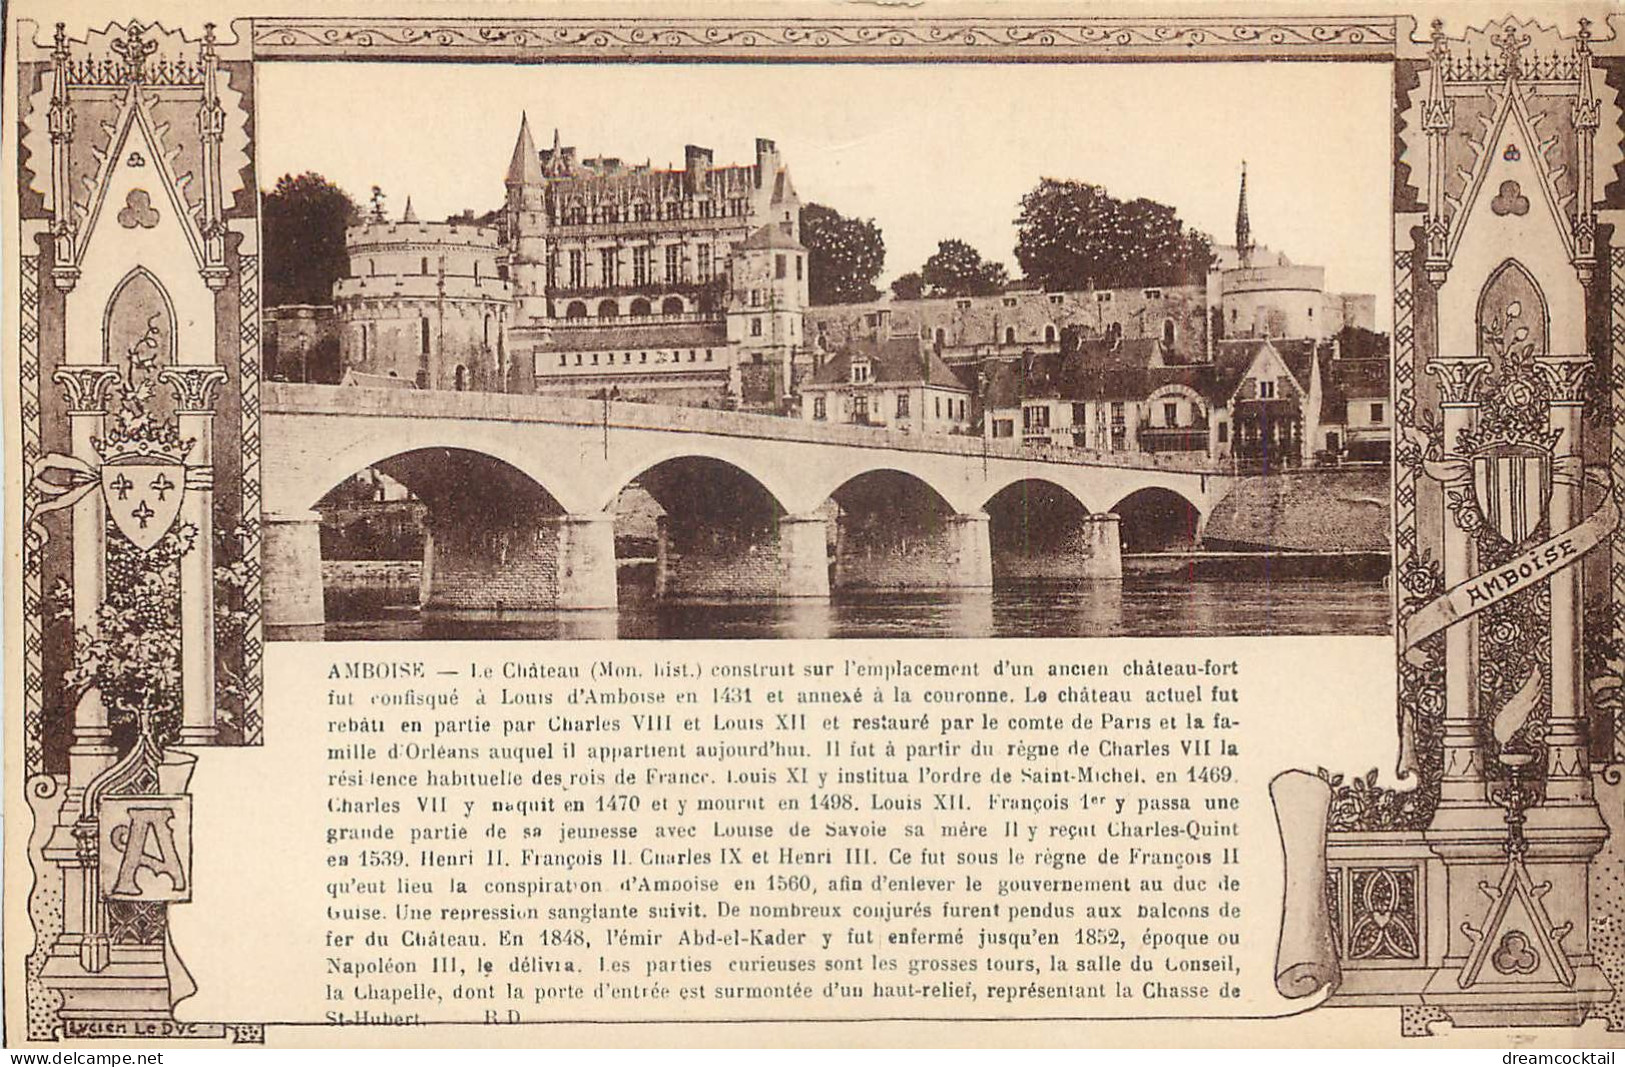 (S) Superbe LOT n°7 de 50 cartes postales anciennes France régionalisme